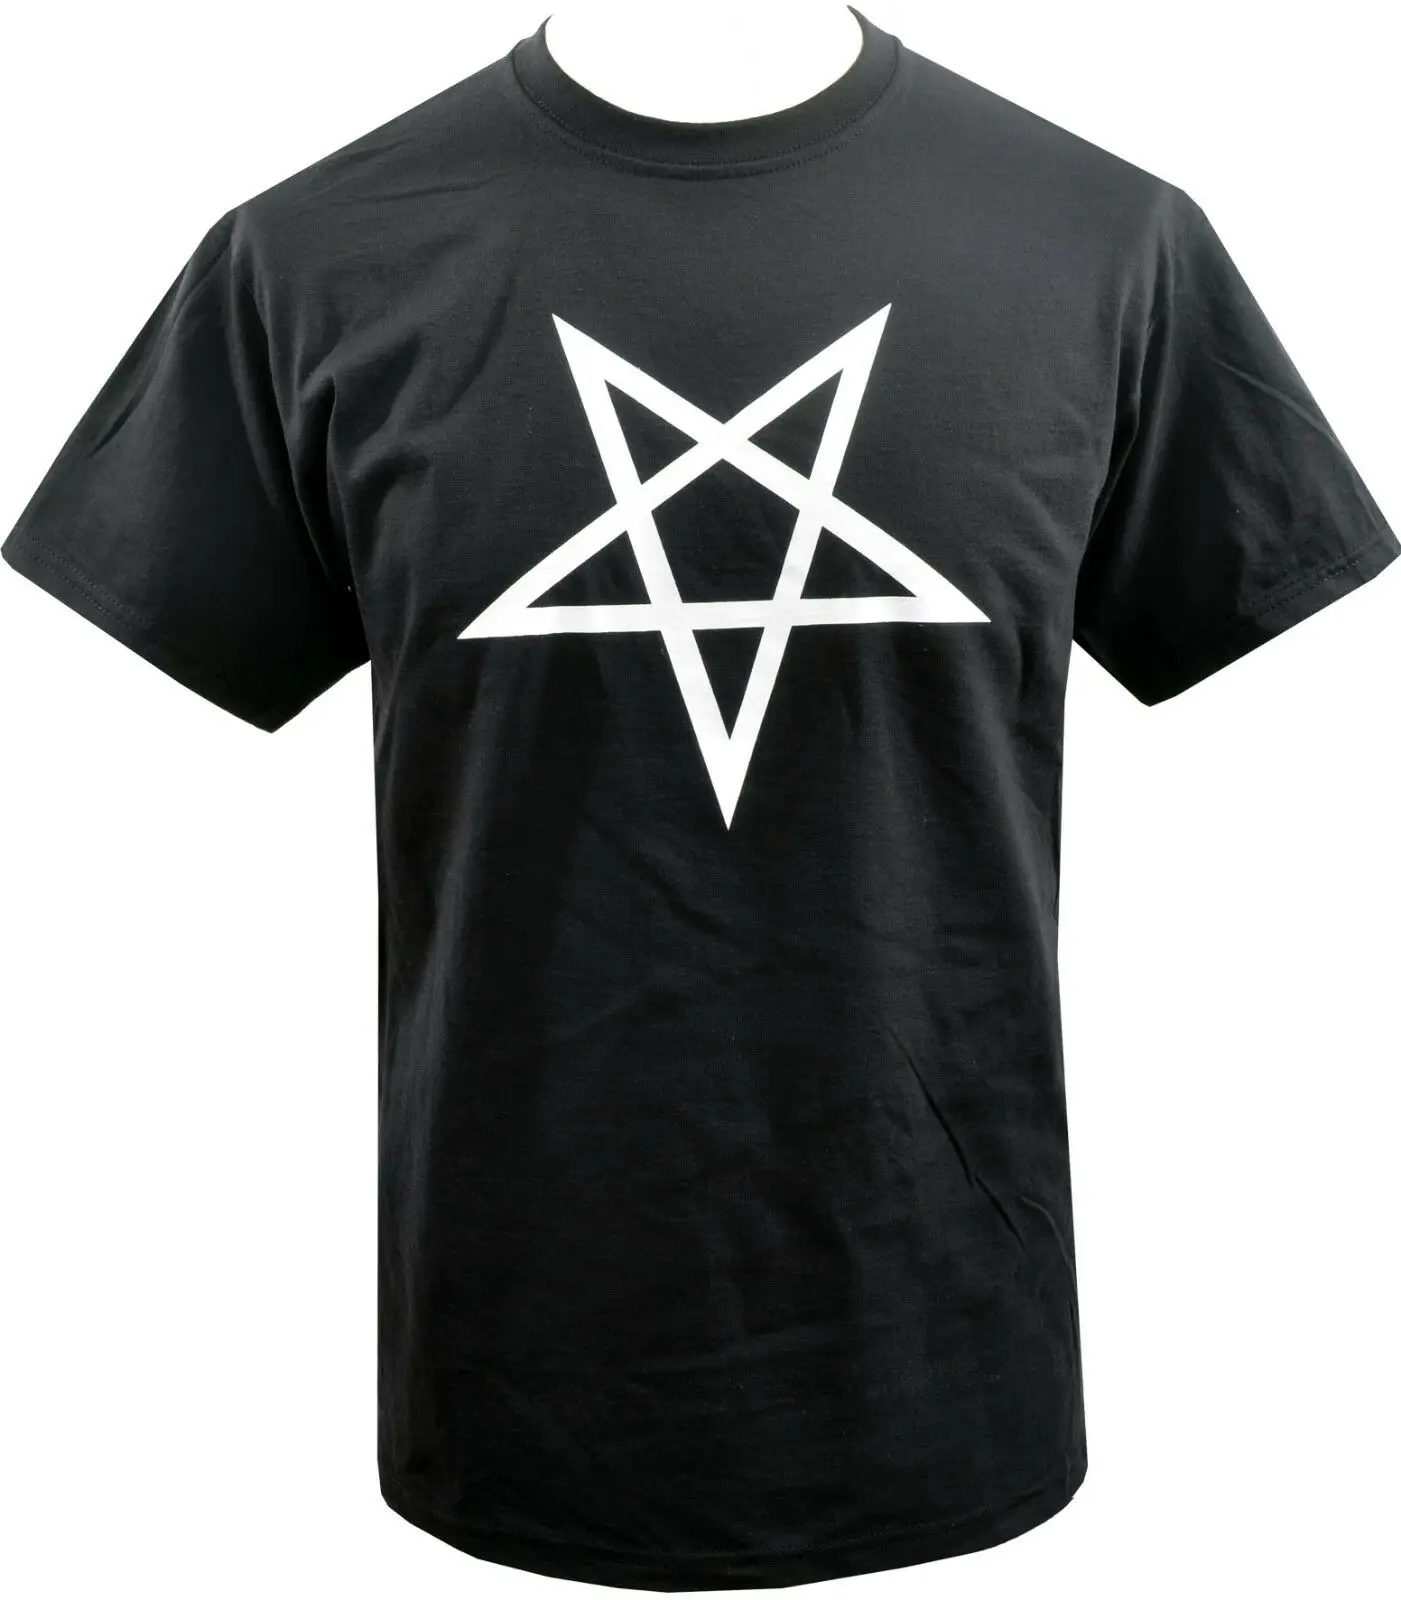 Фото Мужская футболка с изображением перевернутой пентаграммы SATANTIC скрытую Церковь